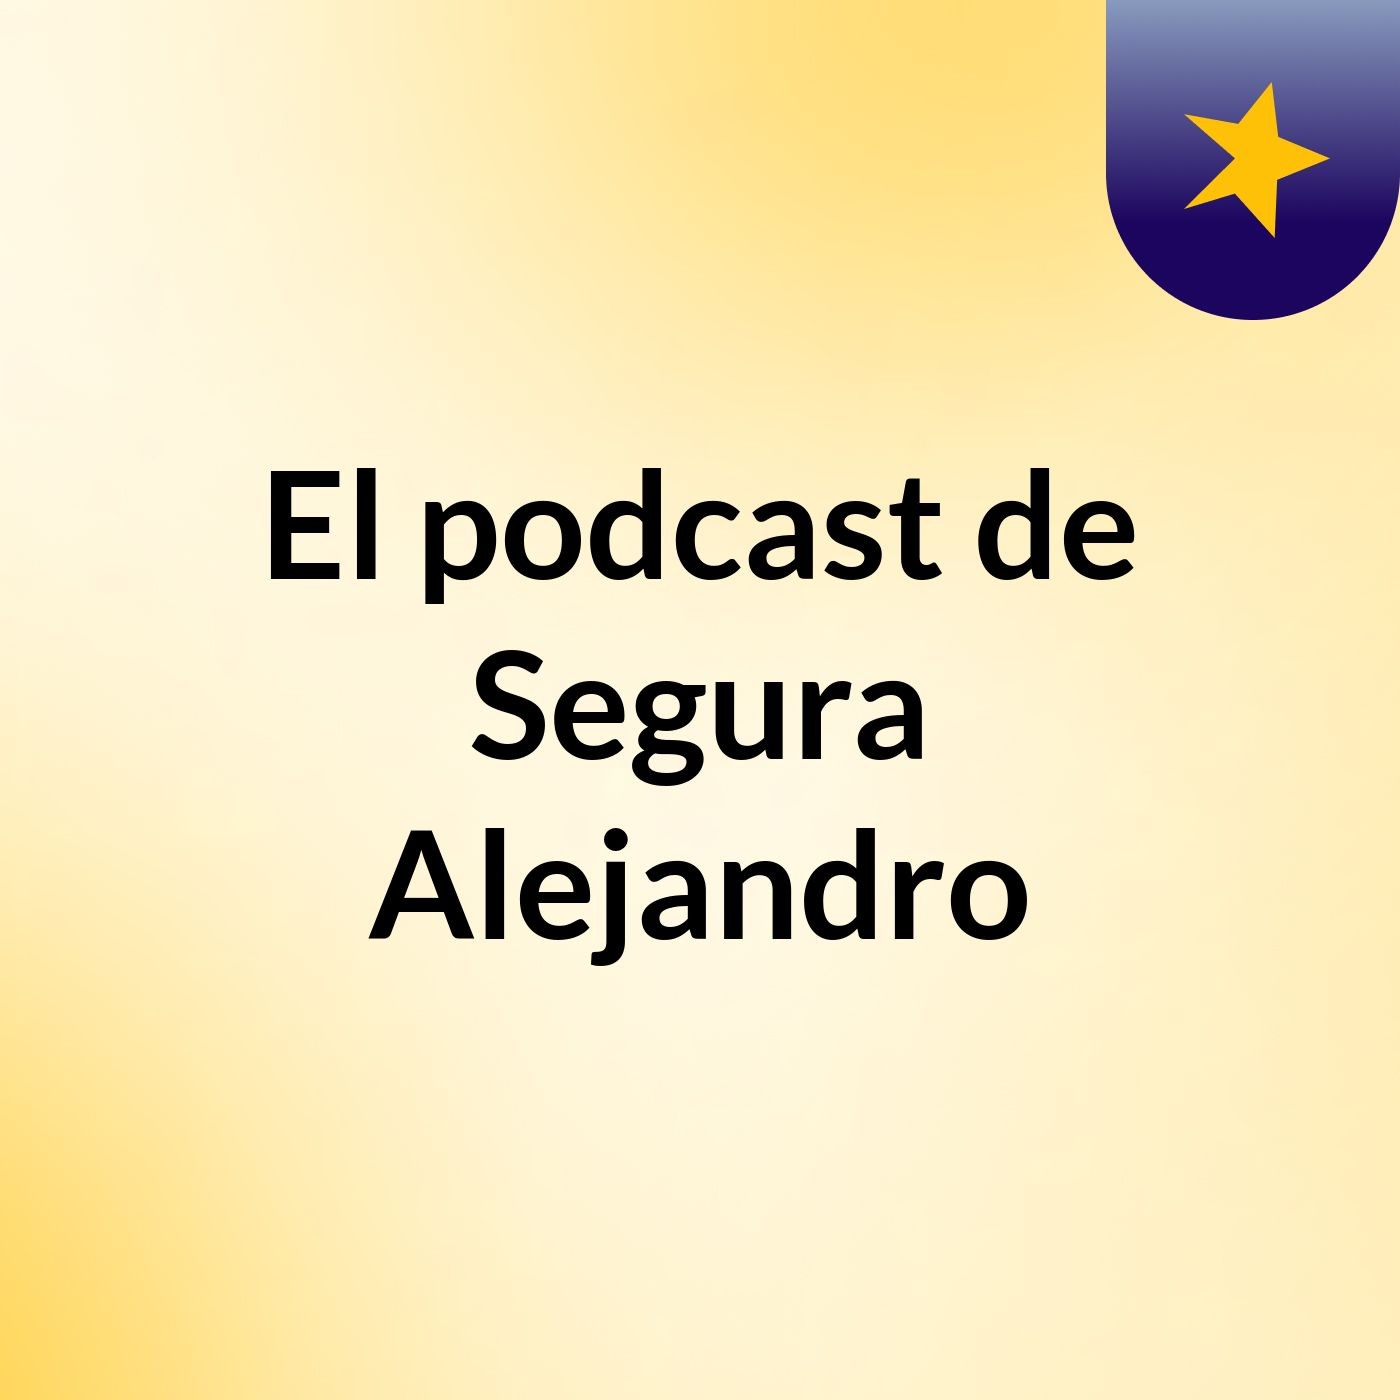 El podcast de Segura Alejandro